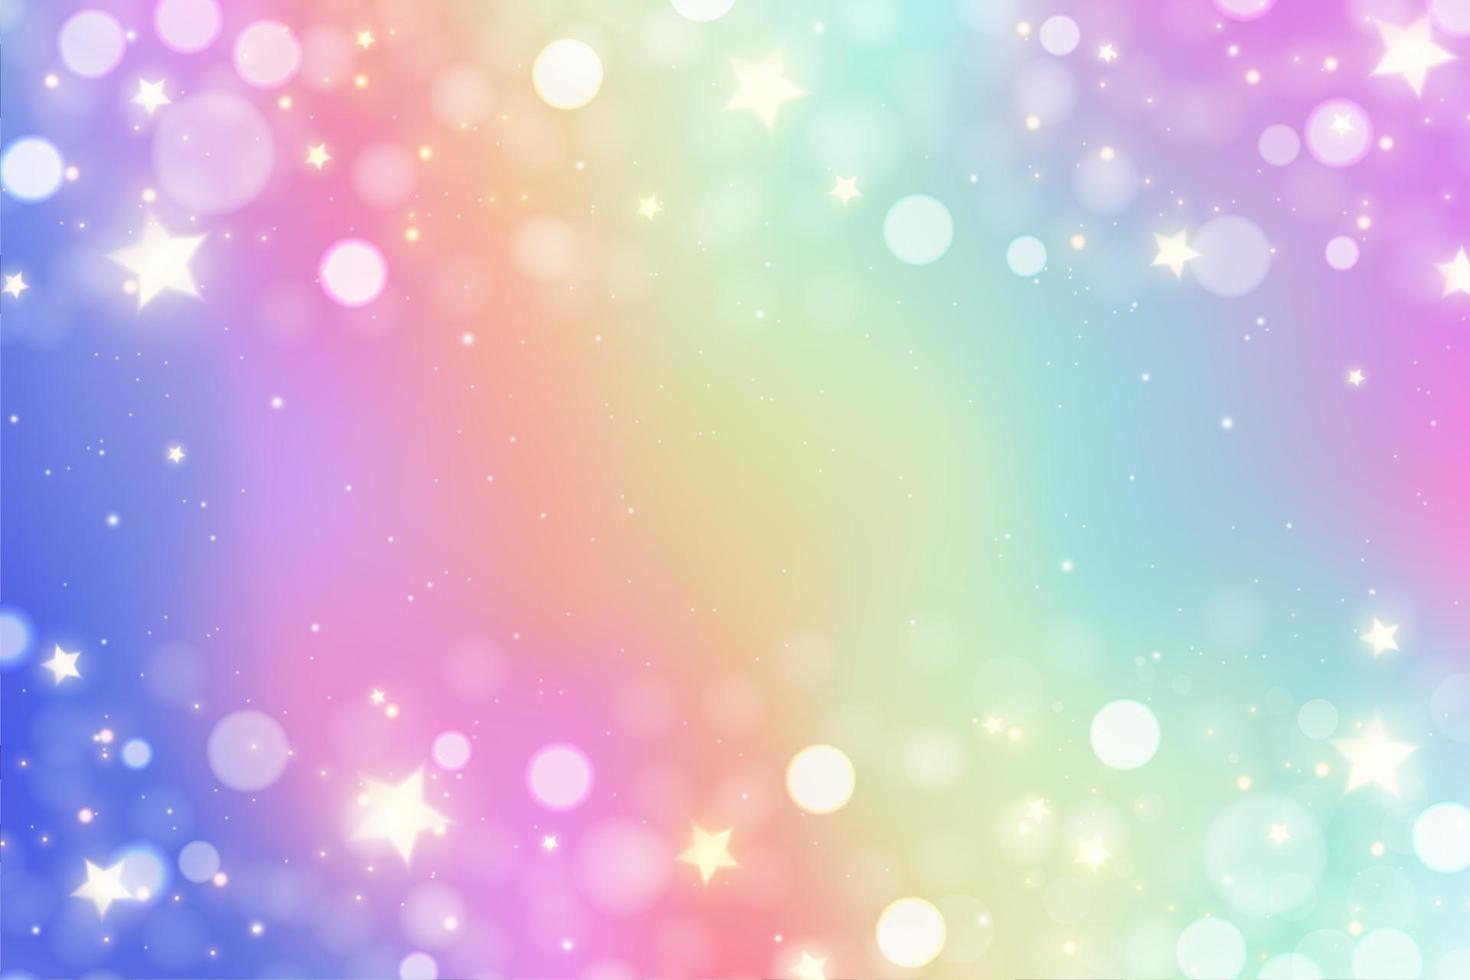 fondo de brillo de arco iris de unicornio con destellos en colores pastel. diseño de acuarela iridiscente. holograma degradado con estrellas y bokeh. ilustración vectorial vector